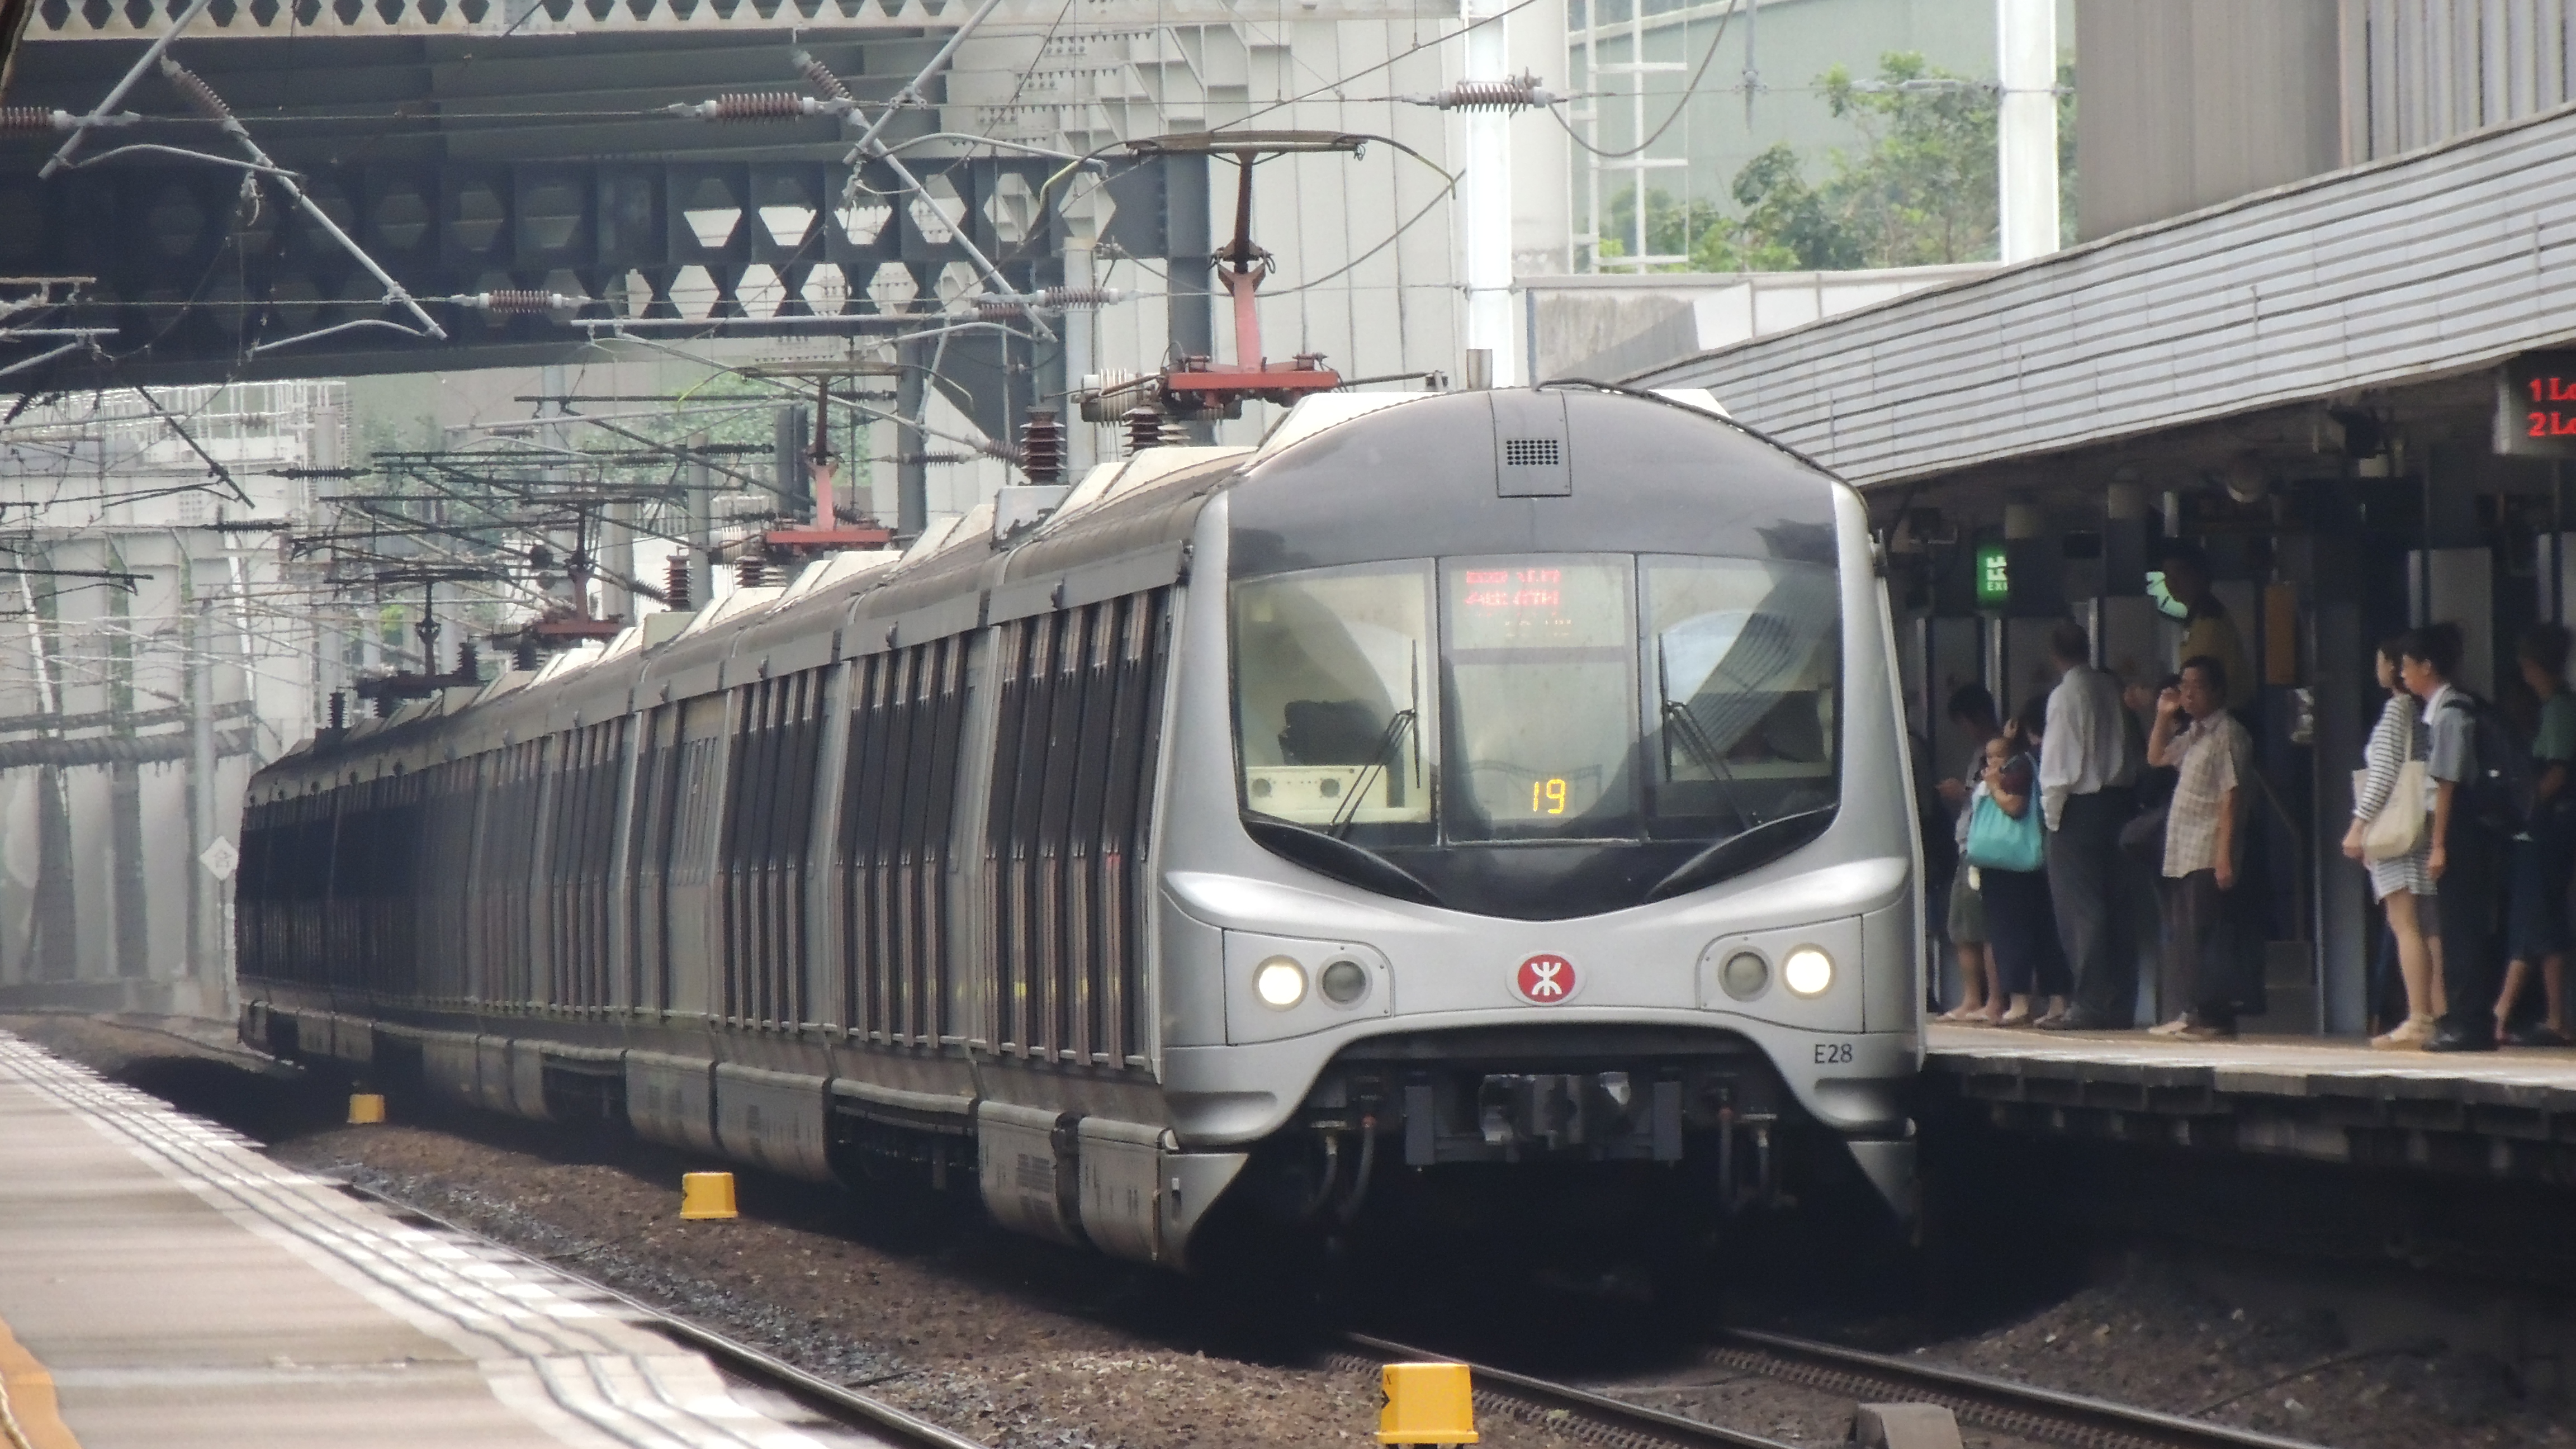 > 新闻专题 >  新闻 香港   在9月12日开始12卡列车与9卡列车混跑后